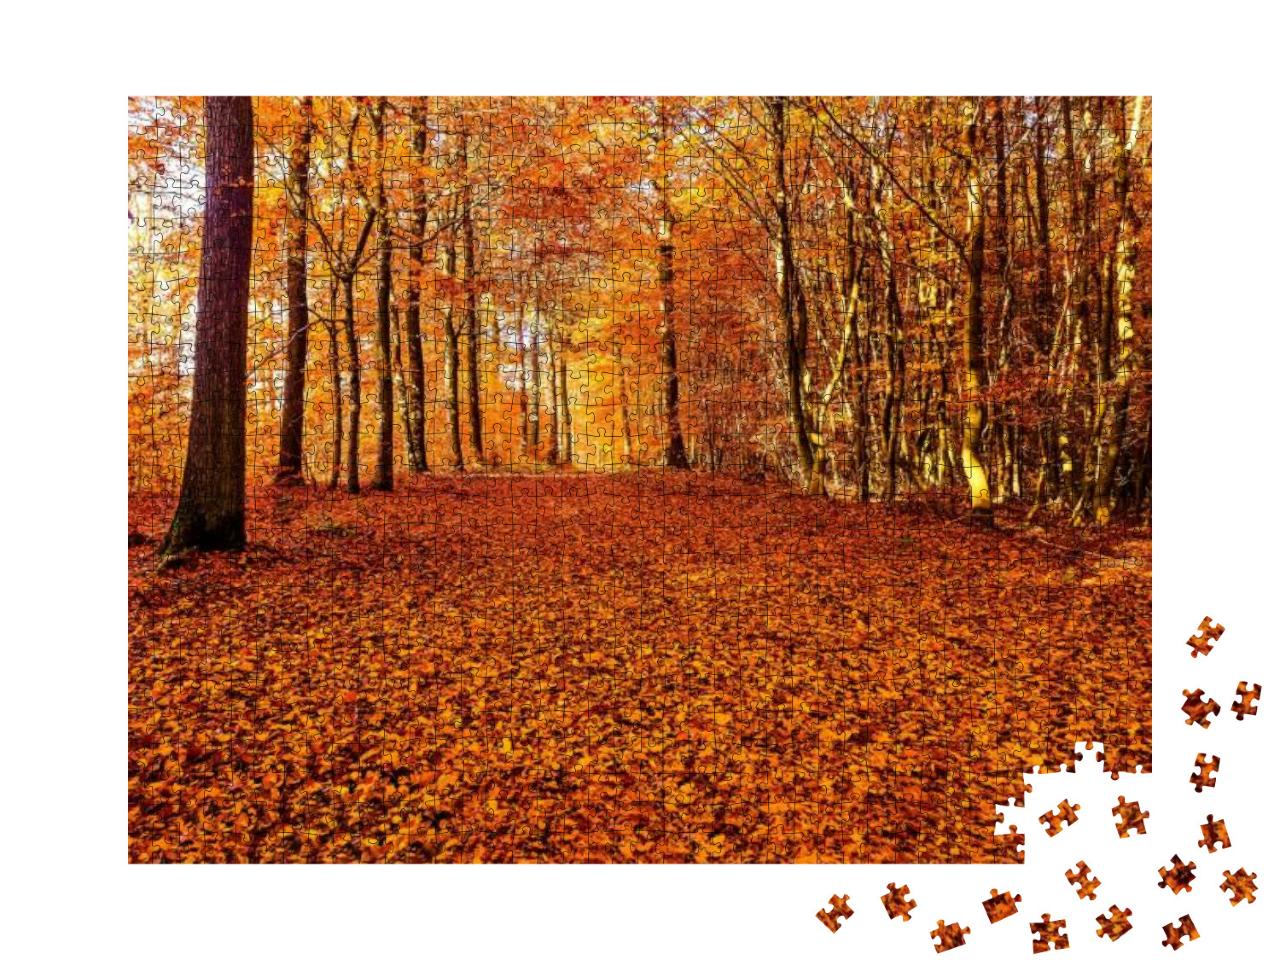 Puzzle 1000 Teile „Eine Straße aus Herbstlaub im Wald“